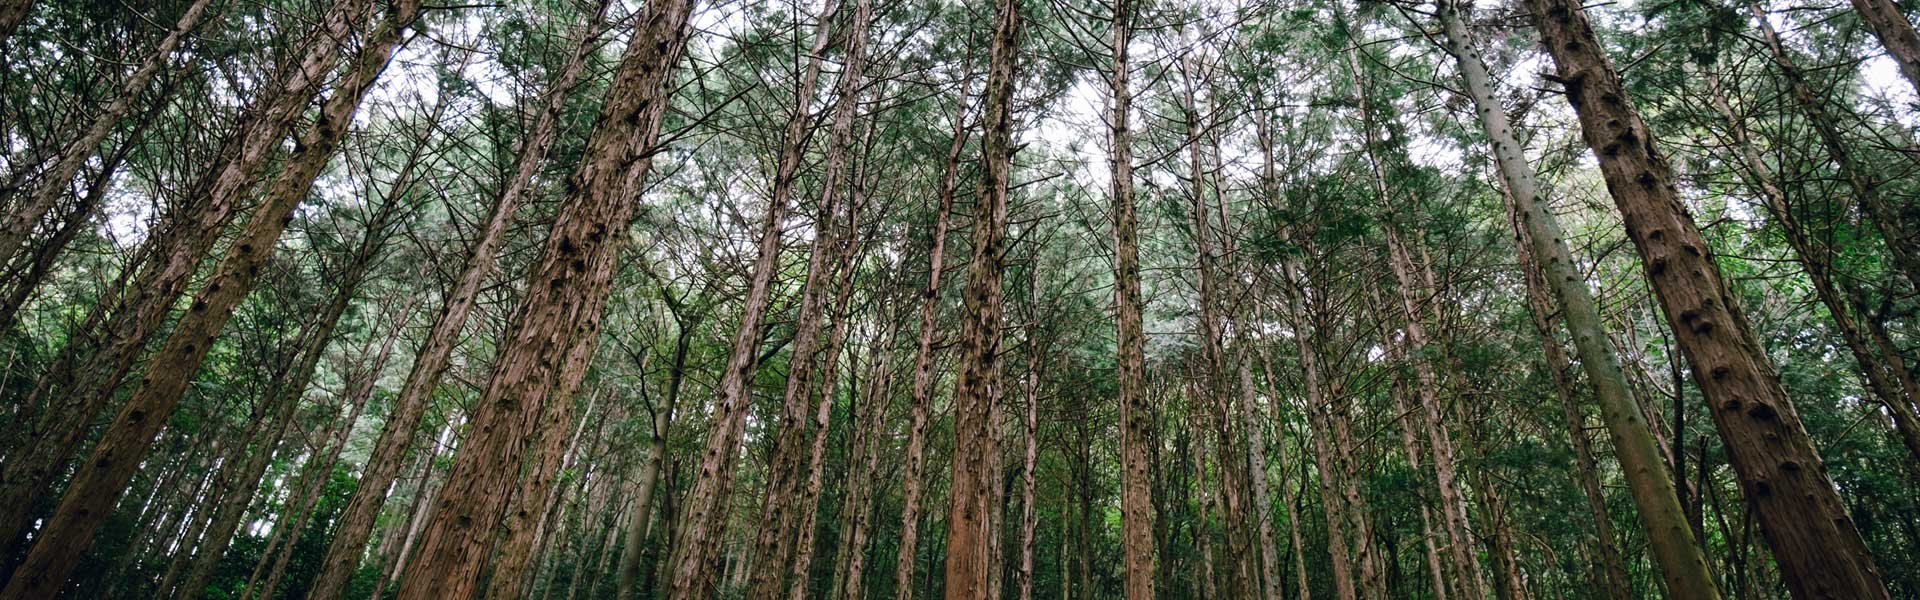 岐阜県森林文化アカデミーの森 ©Takashi Yasui 